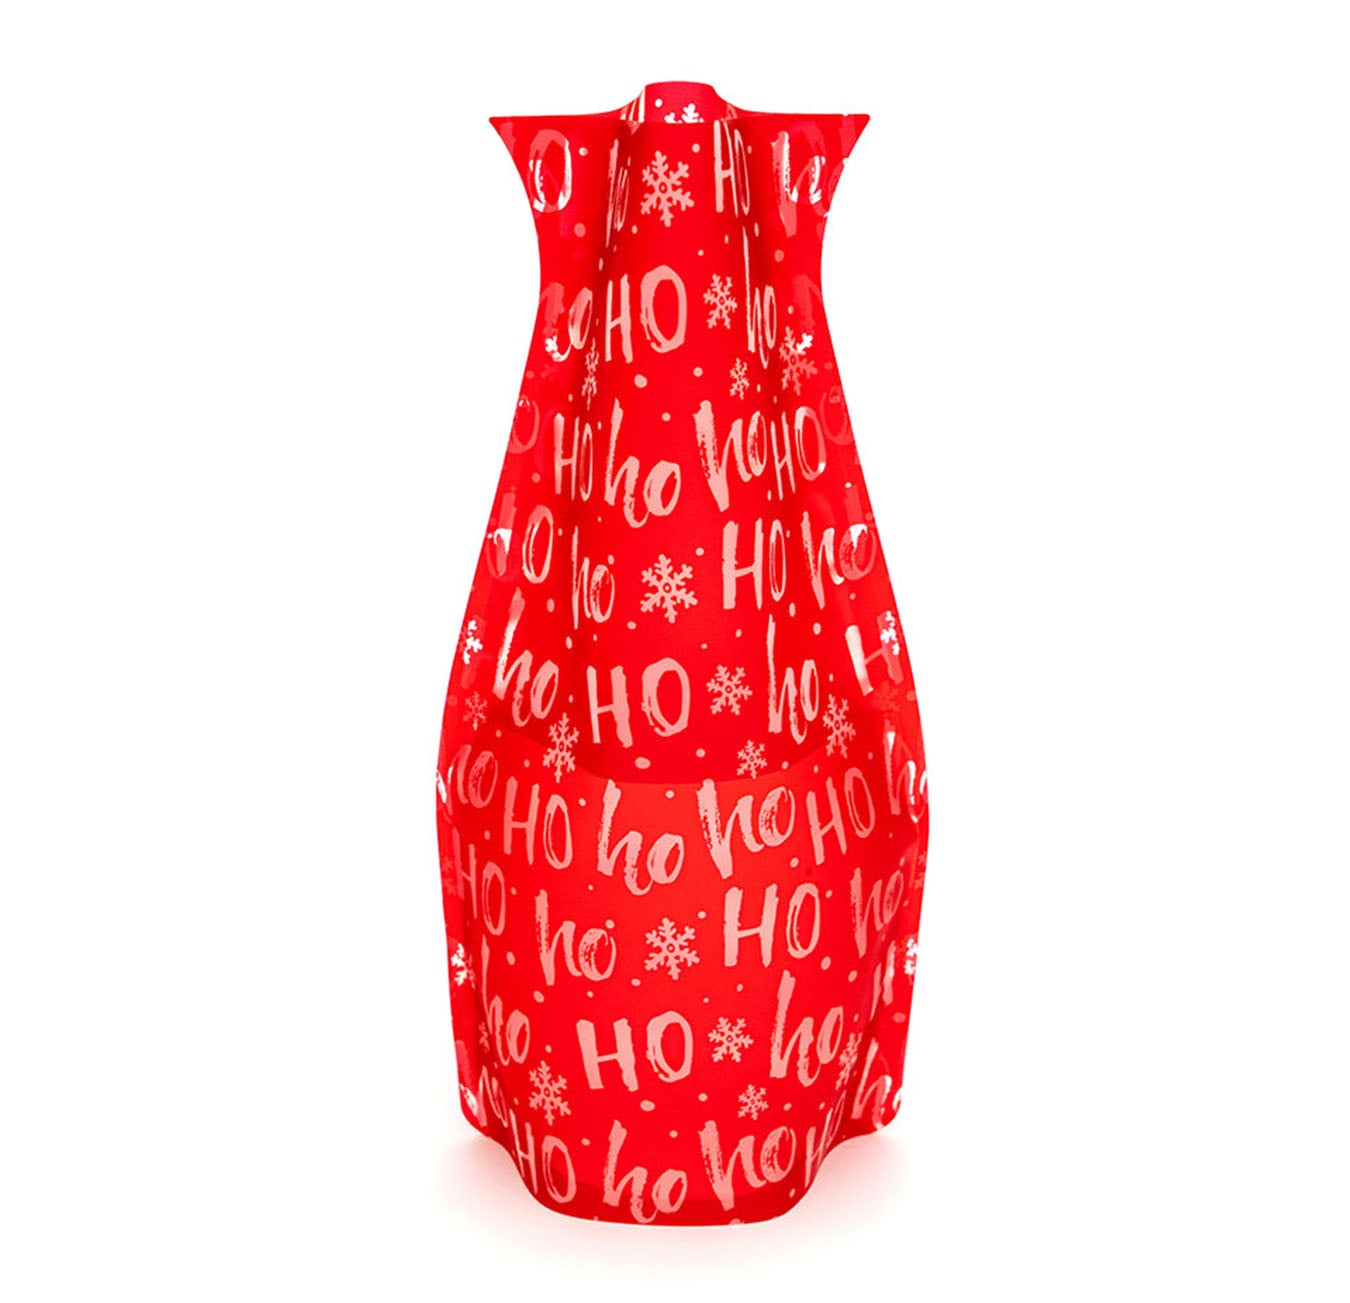 HoHo Christmas Vase